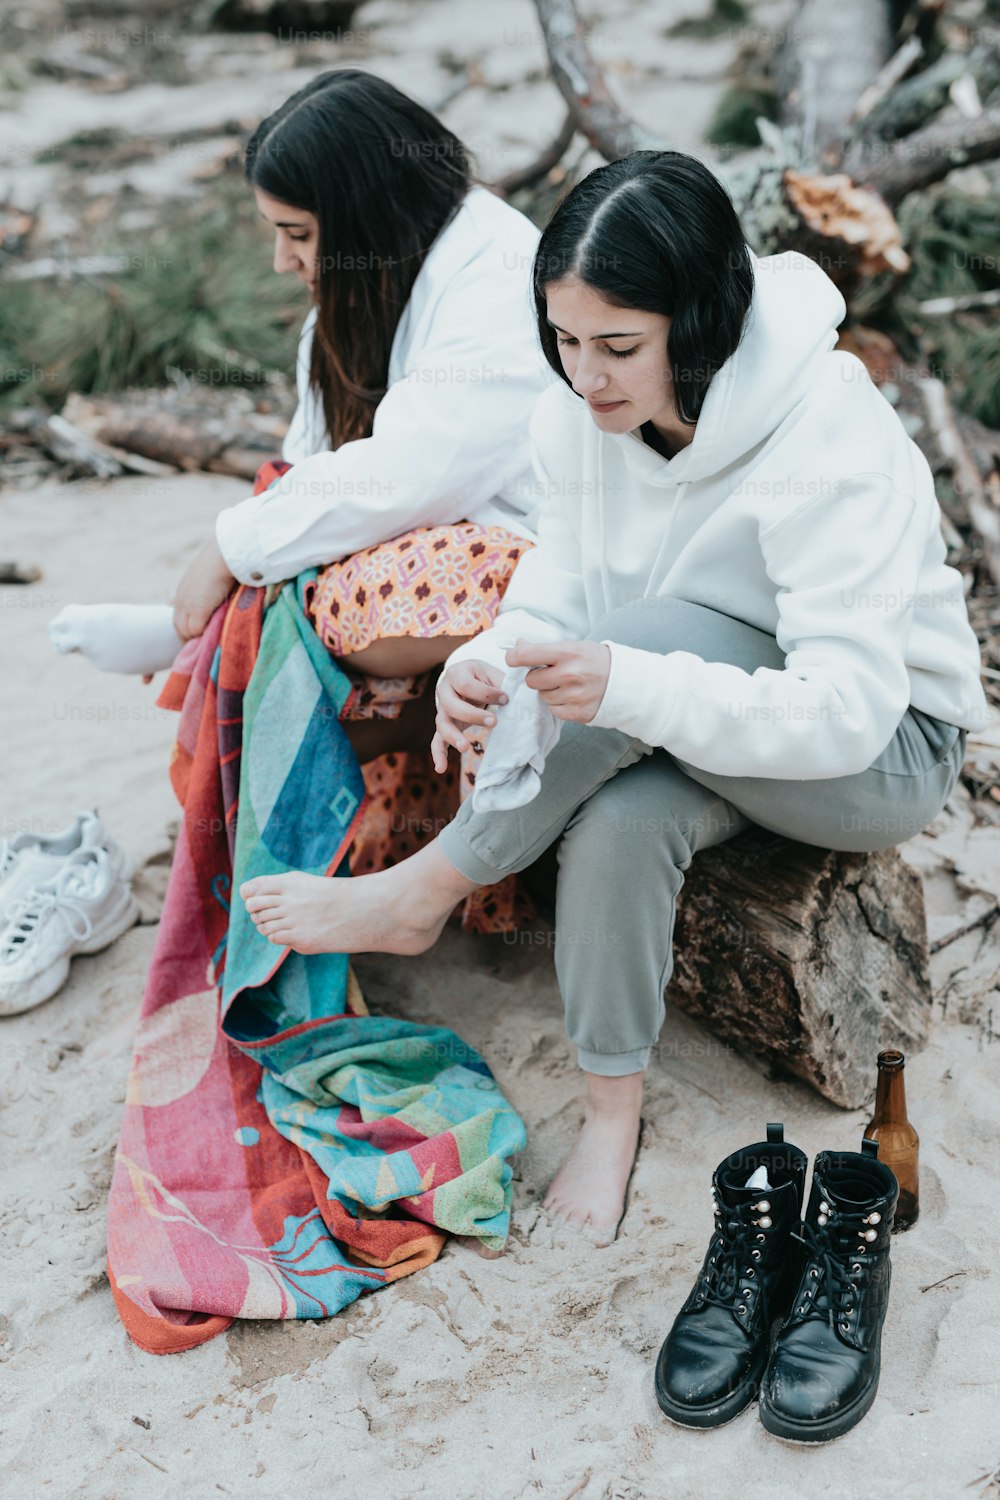 모래 사장 위에 앉아있는 두 명의 여성